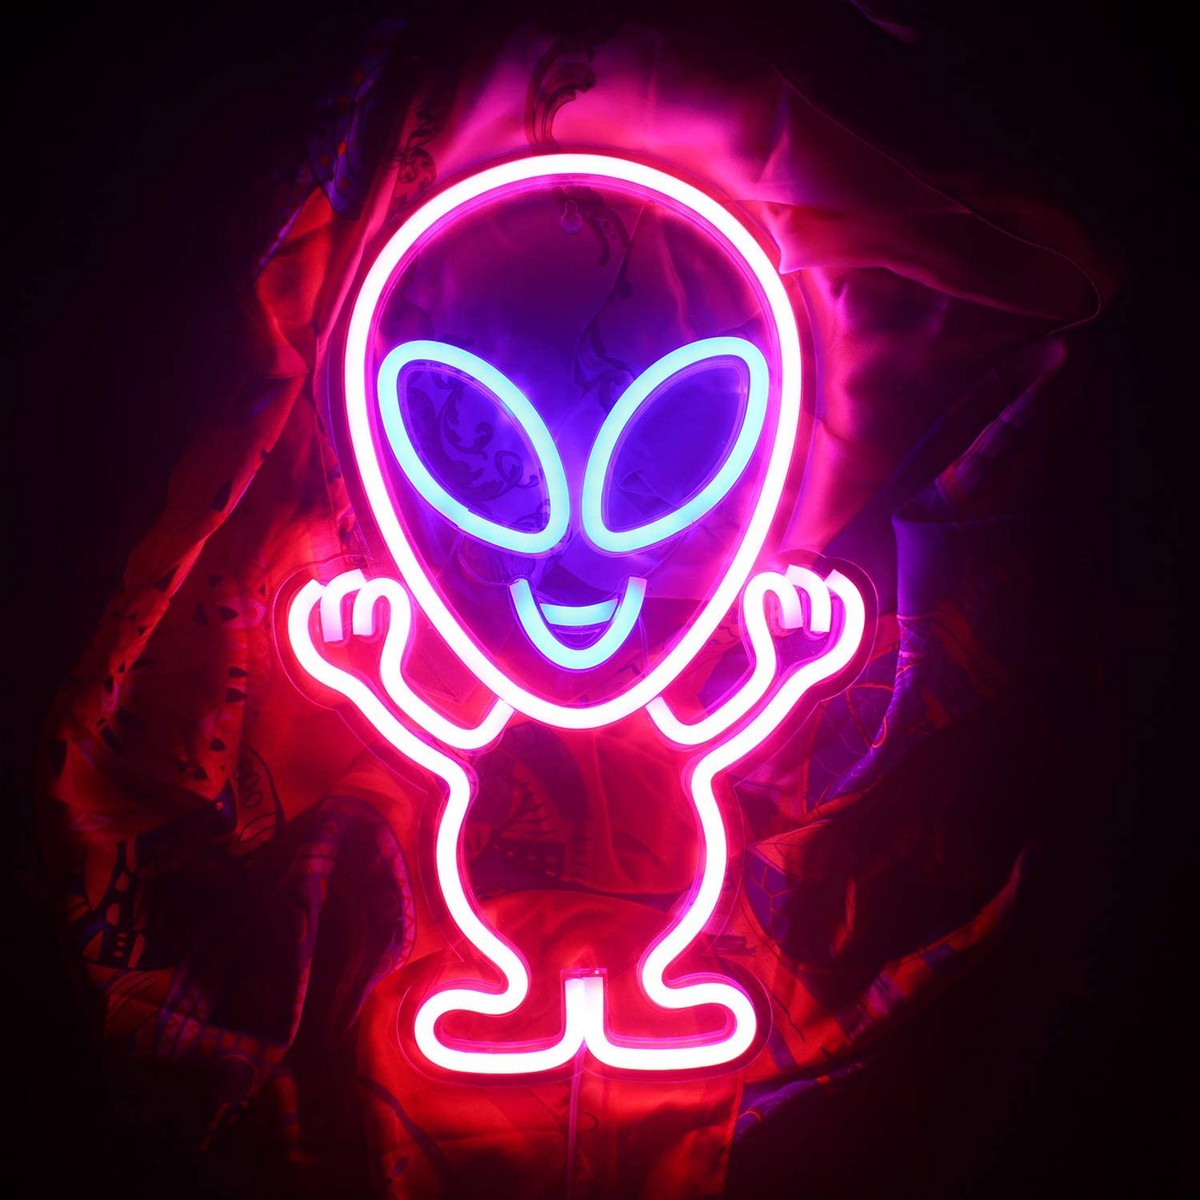 logo al neon a led che brilla sul muro - alien